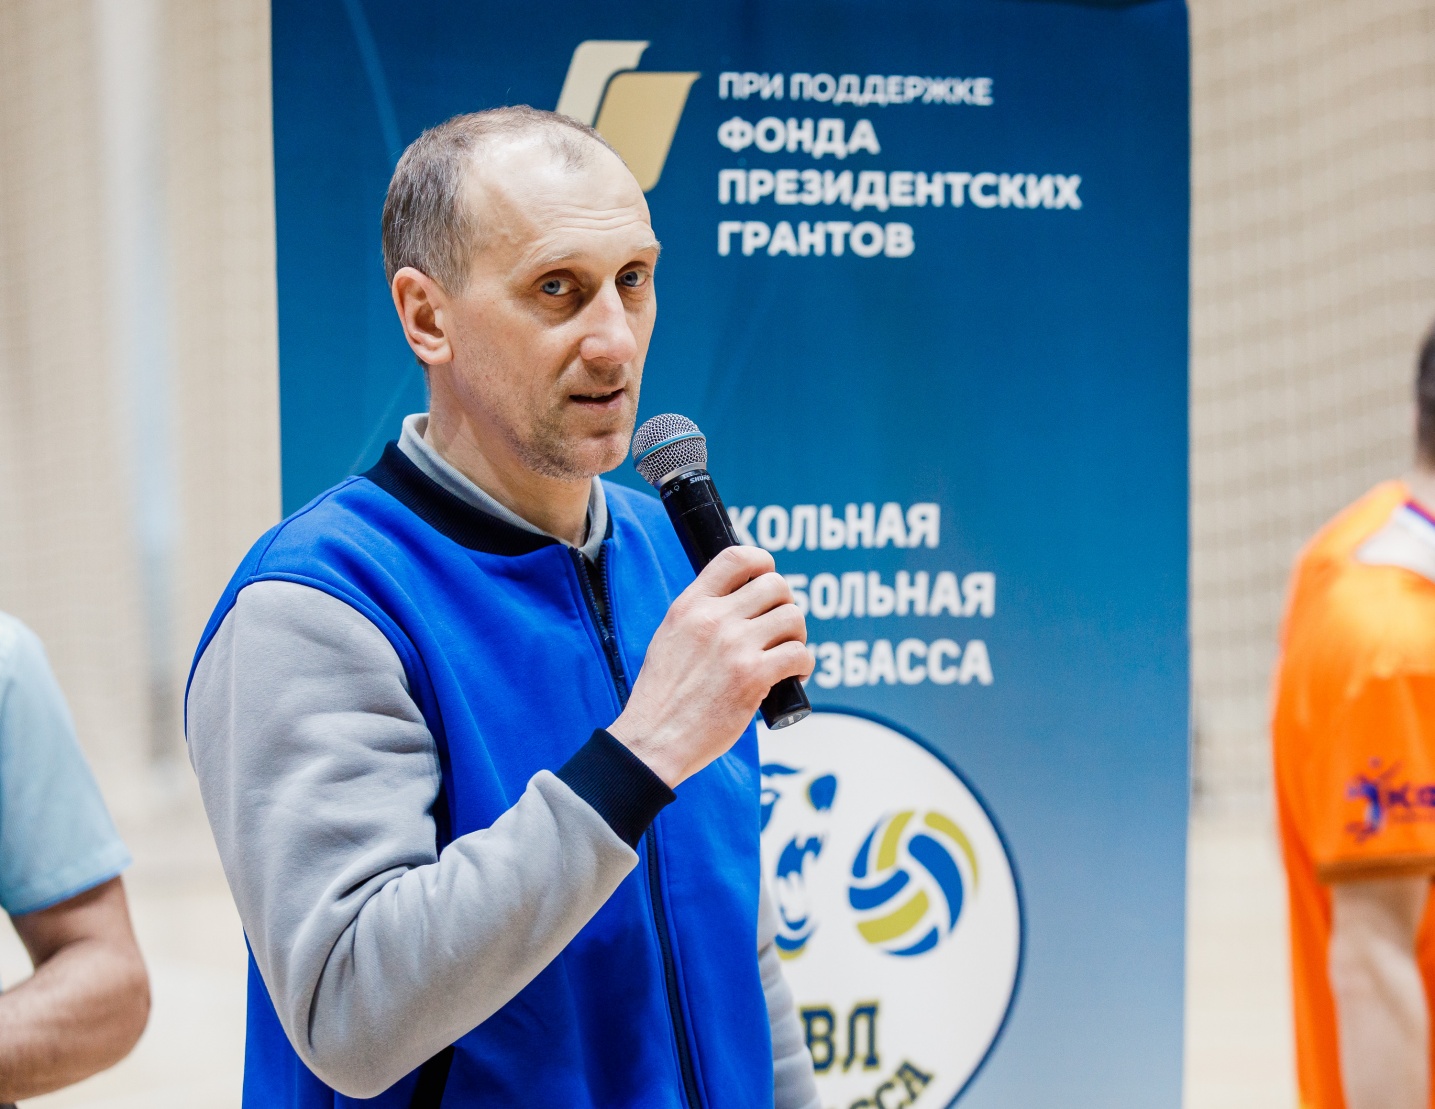 Антон Павлович Латышенко – председатель Федерации волейбола Кемеровской области